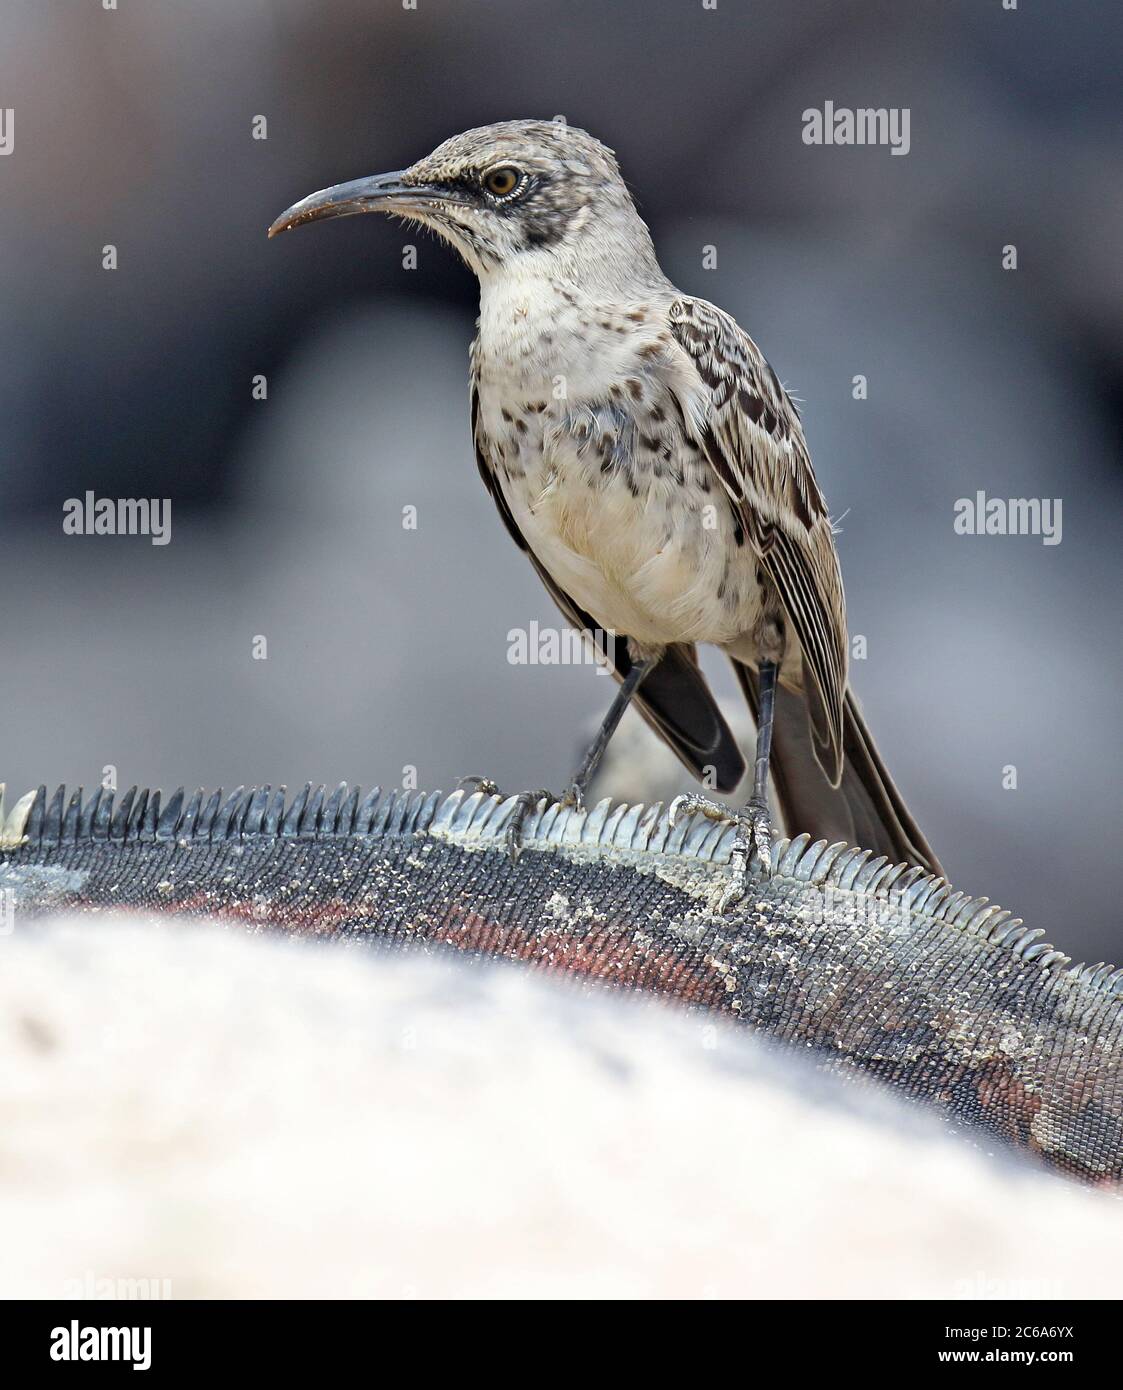 Hood Mockingbird (Mimus macdonaldi), également connu sous le nom de Espanola Mockingbird, sur les îles Galapagos, en Équateur. La recherche de nourriture sur la plage. Banque D'Images